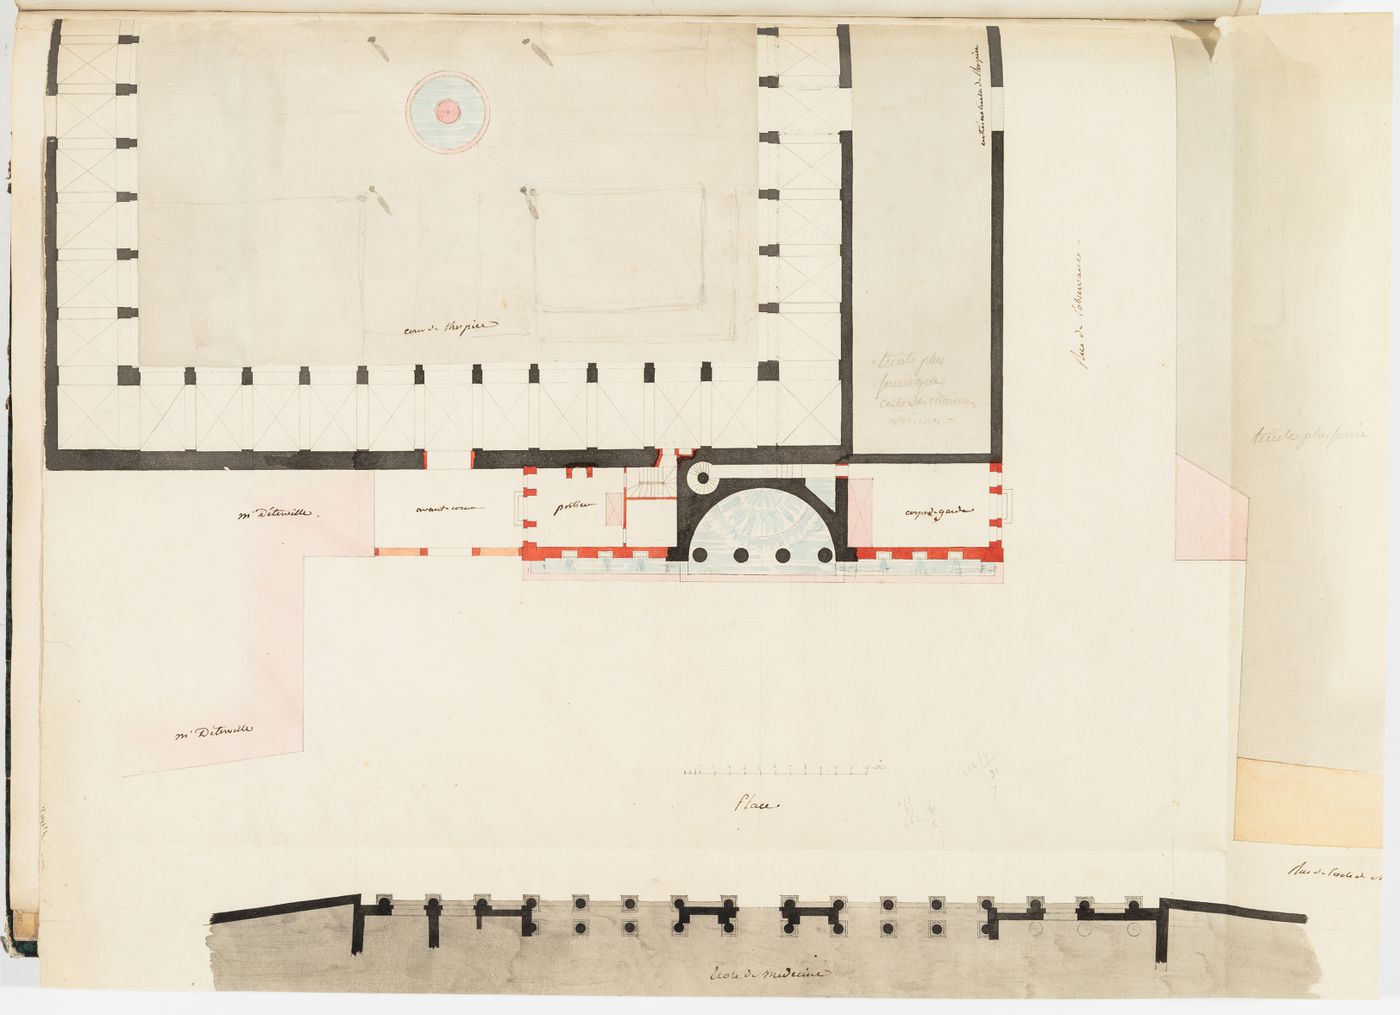 Project for the redevelopment of the École de médecine and surrounding area, Paris: Partial plan for the Clinique de médecine showing the fountain